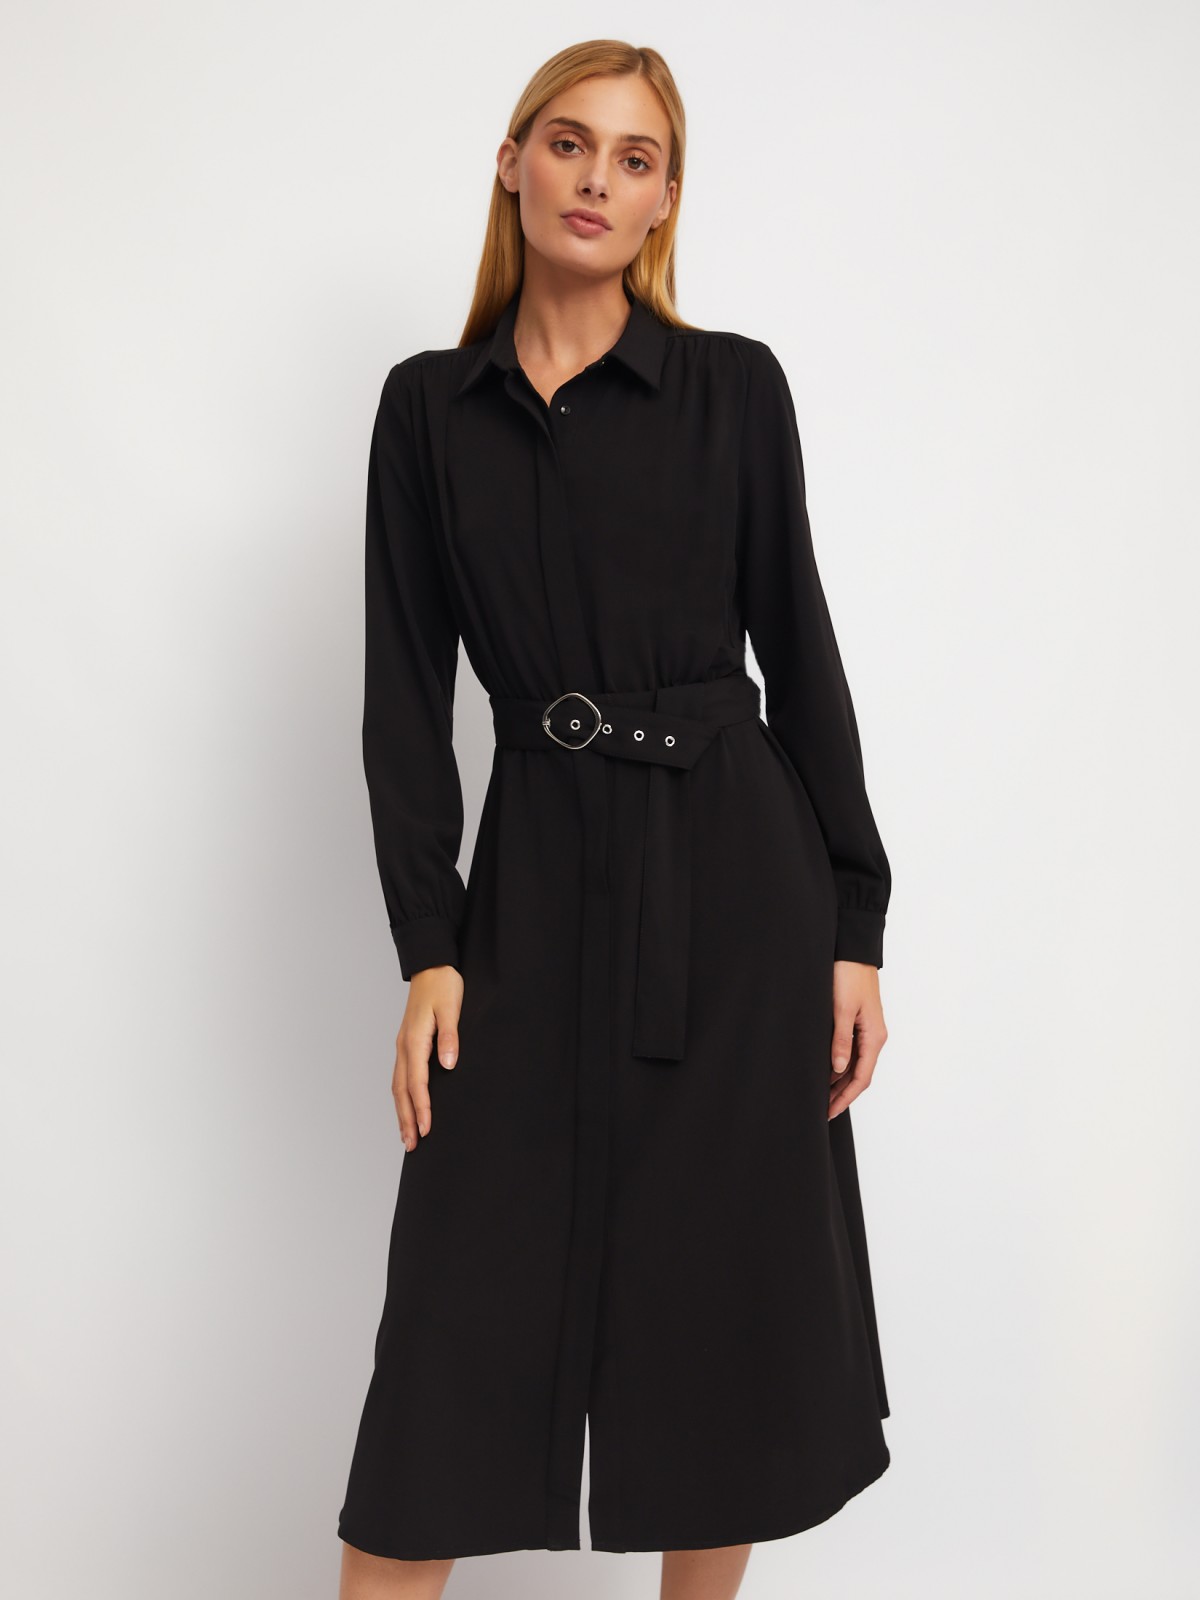 Платье-рубашка длины миди с воротником и акцентном на талии zolla 024118208223, цвет черный, размер XS